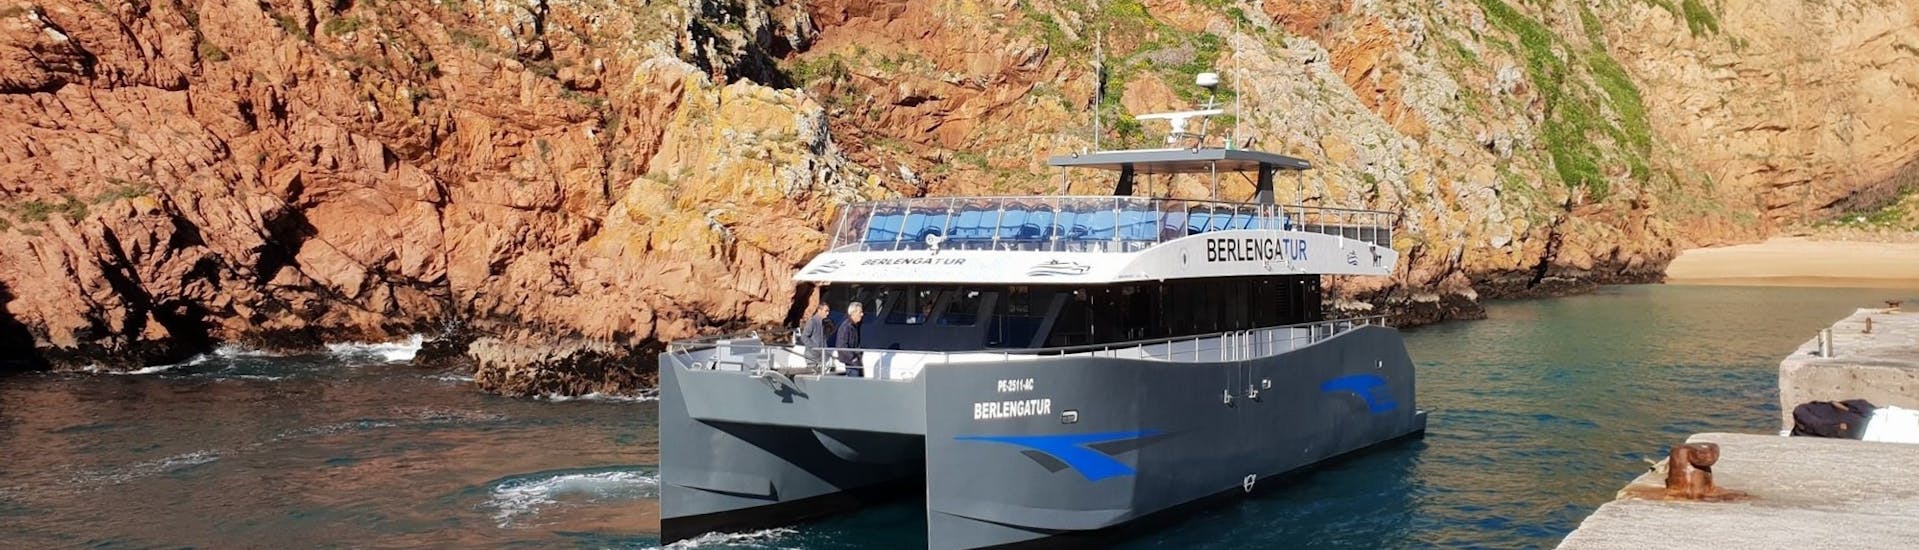 Catamarantocht van Peniche naar Berlengas met zwemmen & toeristische attracties.